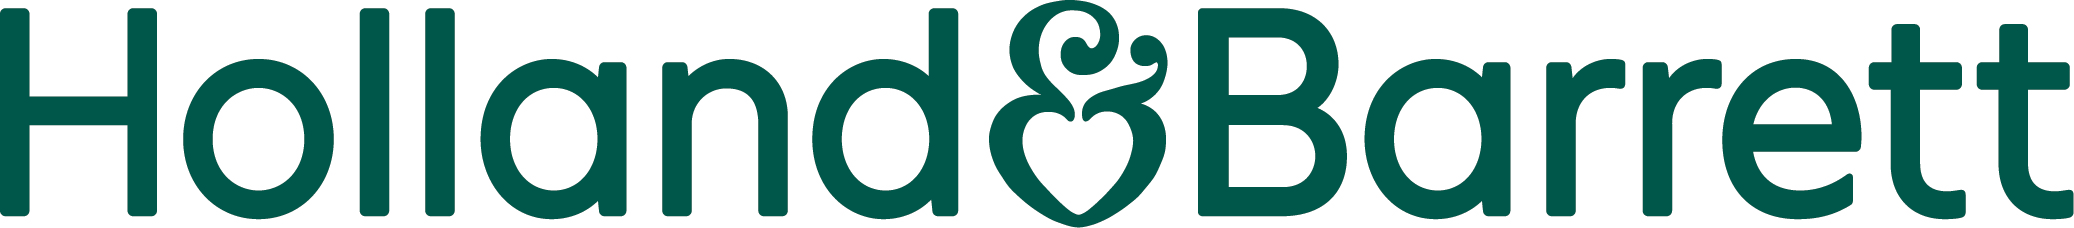 Holland & Barrett Logo